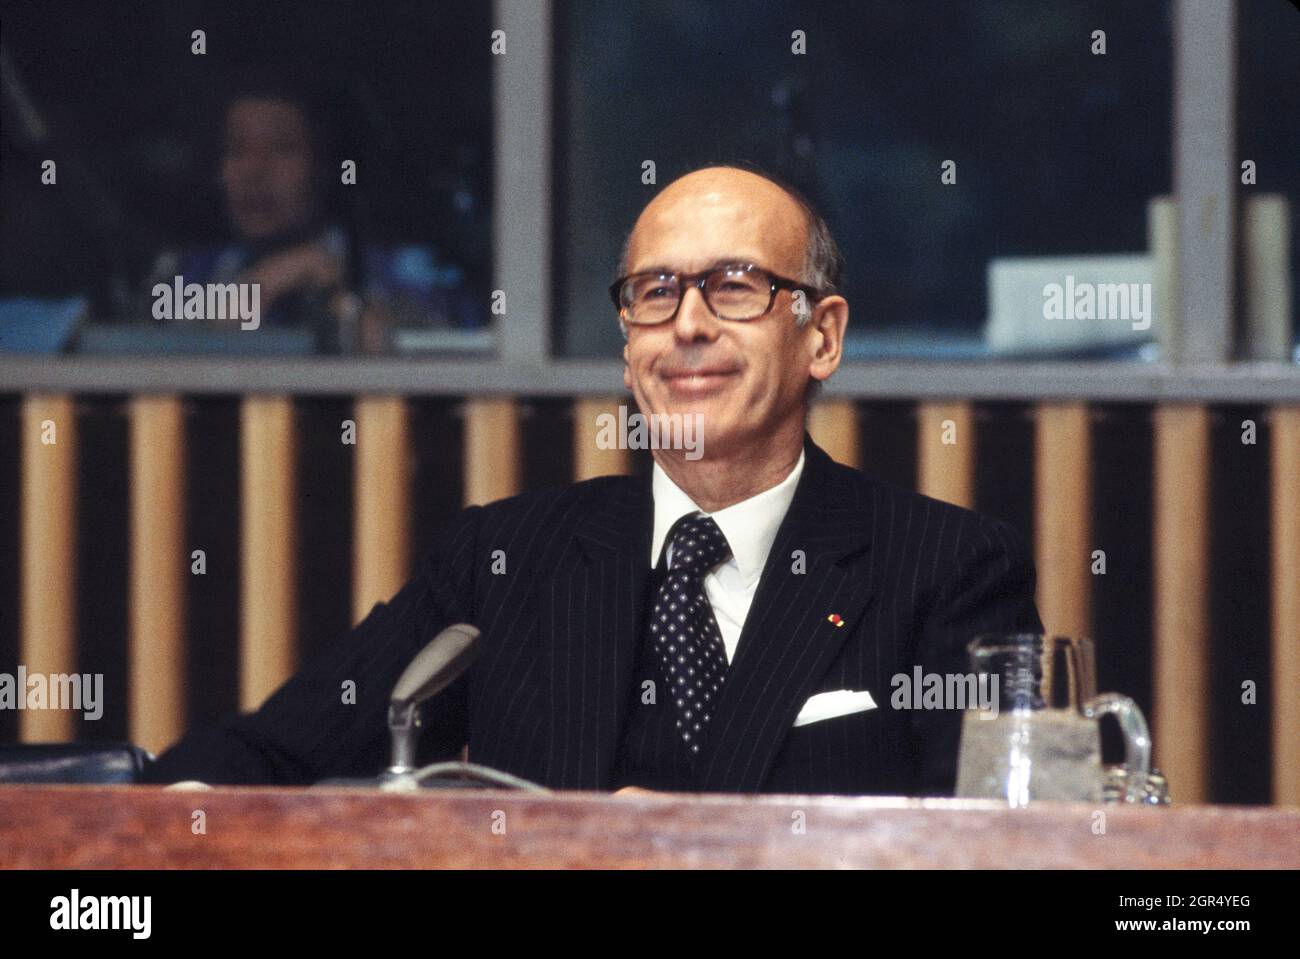 Le Président français Valéry Giscard d'Estaing, s'adressant à l'Assemblée générale des Nations Unies, New York, New York, Etats-Unis, mai 24, 1978 Banque D'Images